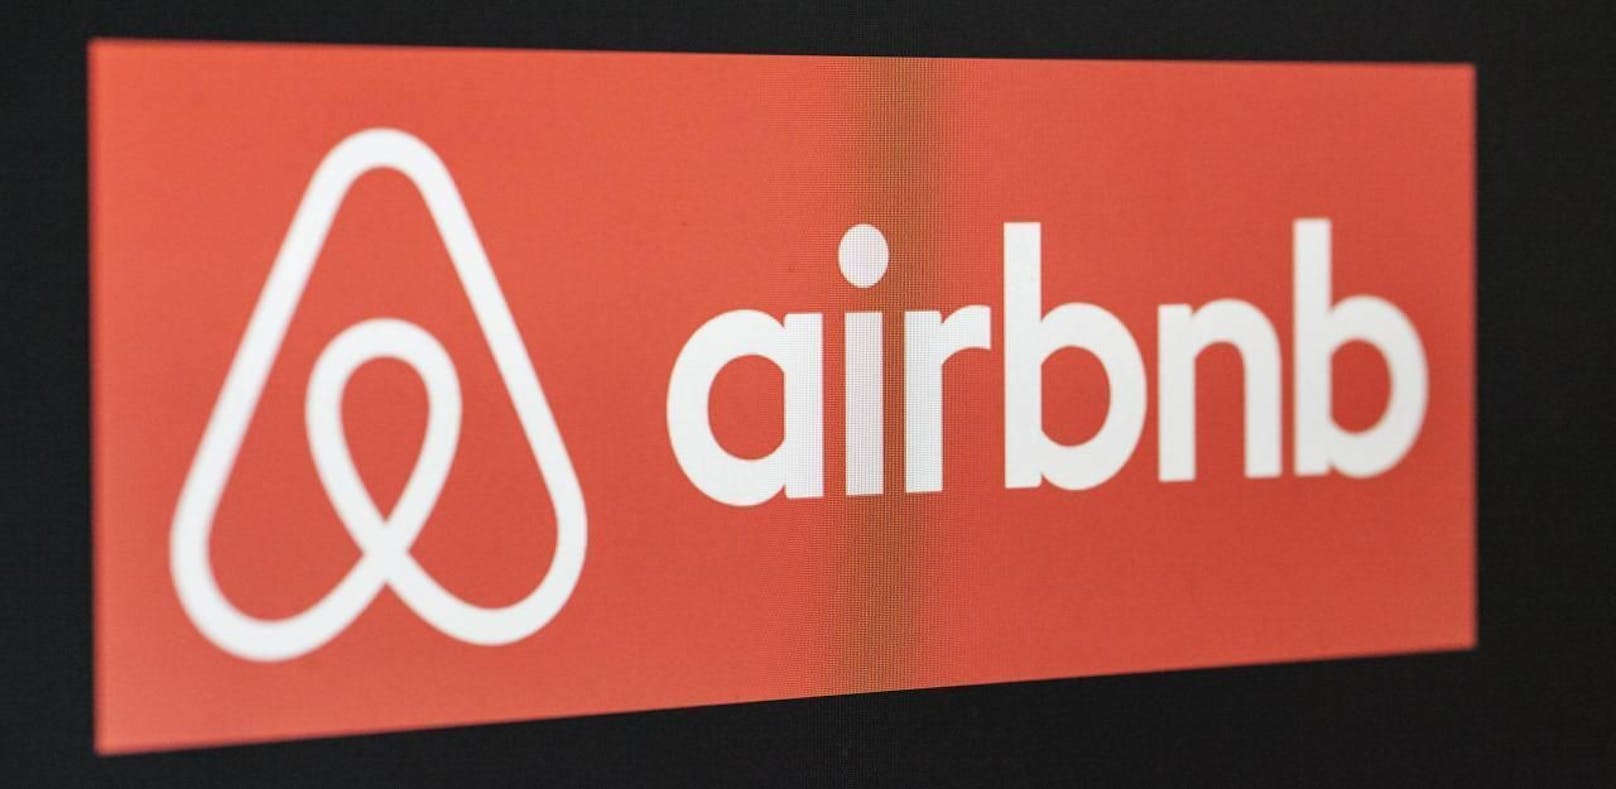 Personen, die ihre Wohnung über Airbnb vermieten, werden ab Anfang 2020 wohl mit einer Registrierung rechnen müssen...